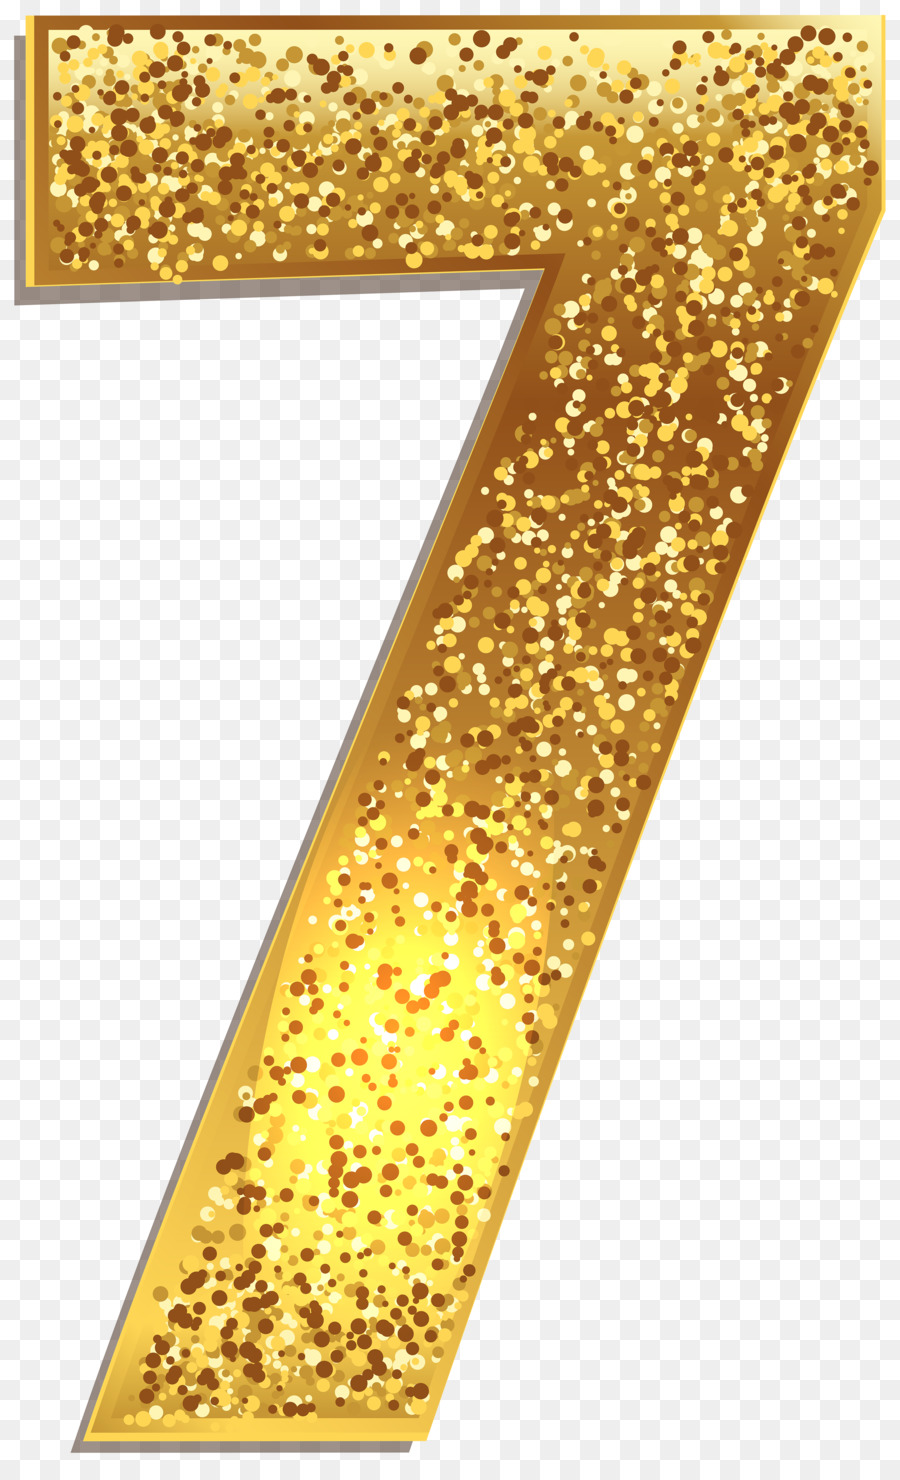 Gold Number Clip art - 7 png download - 3074*5000 - Free Transparent Gold png Download.